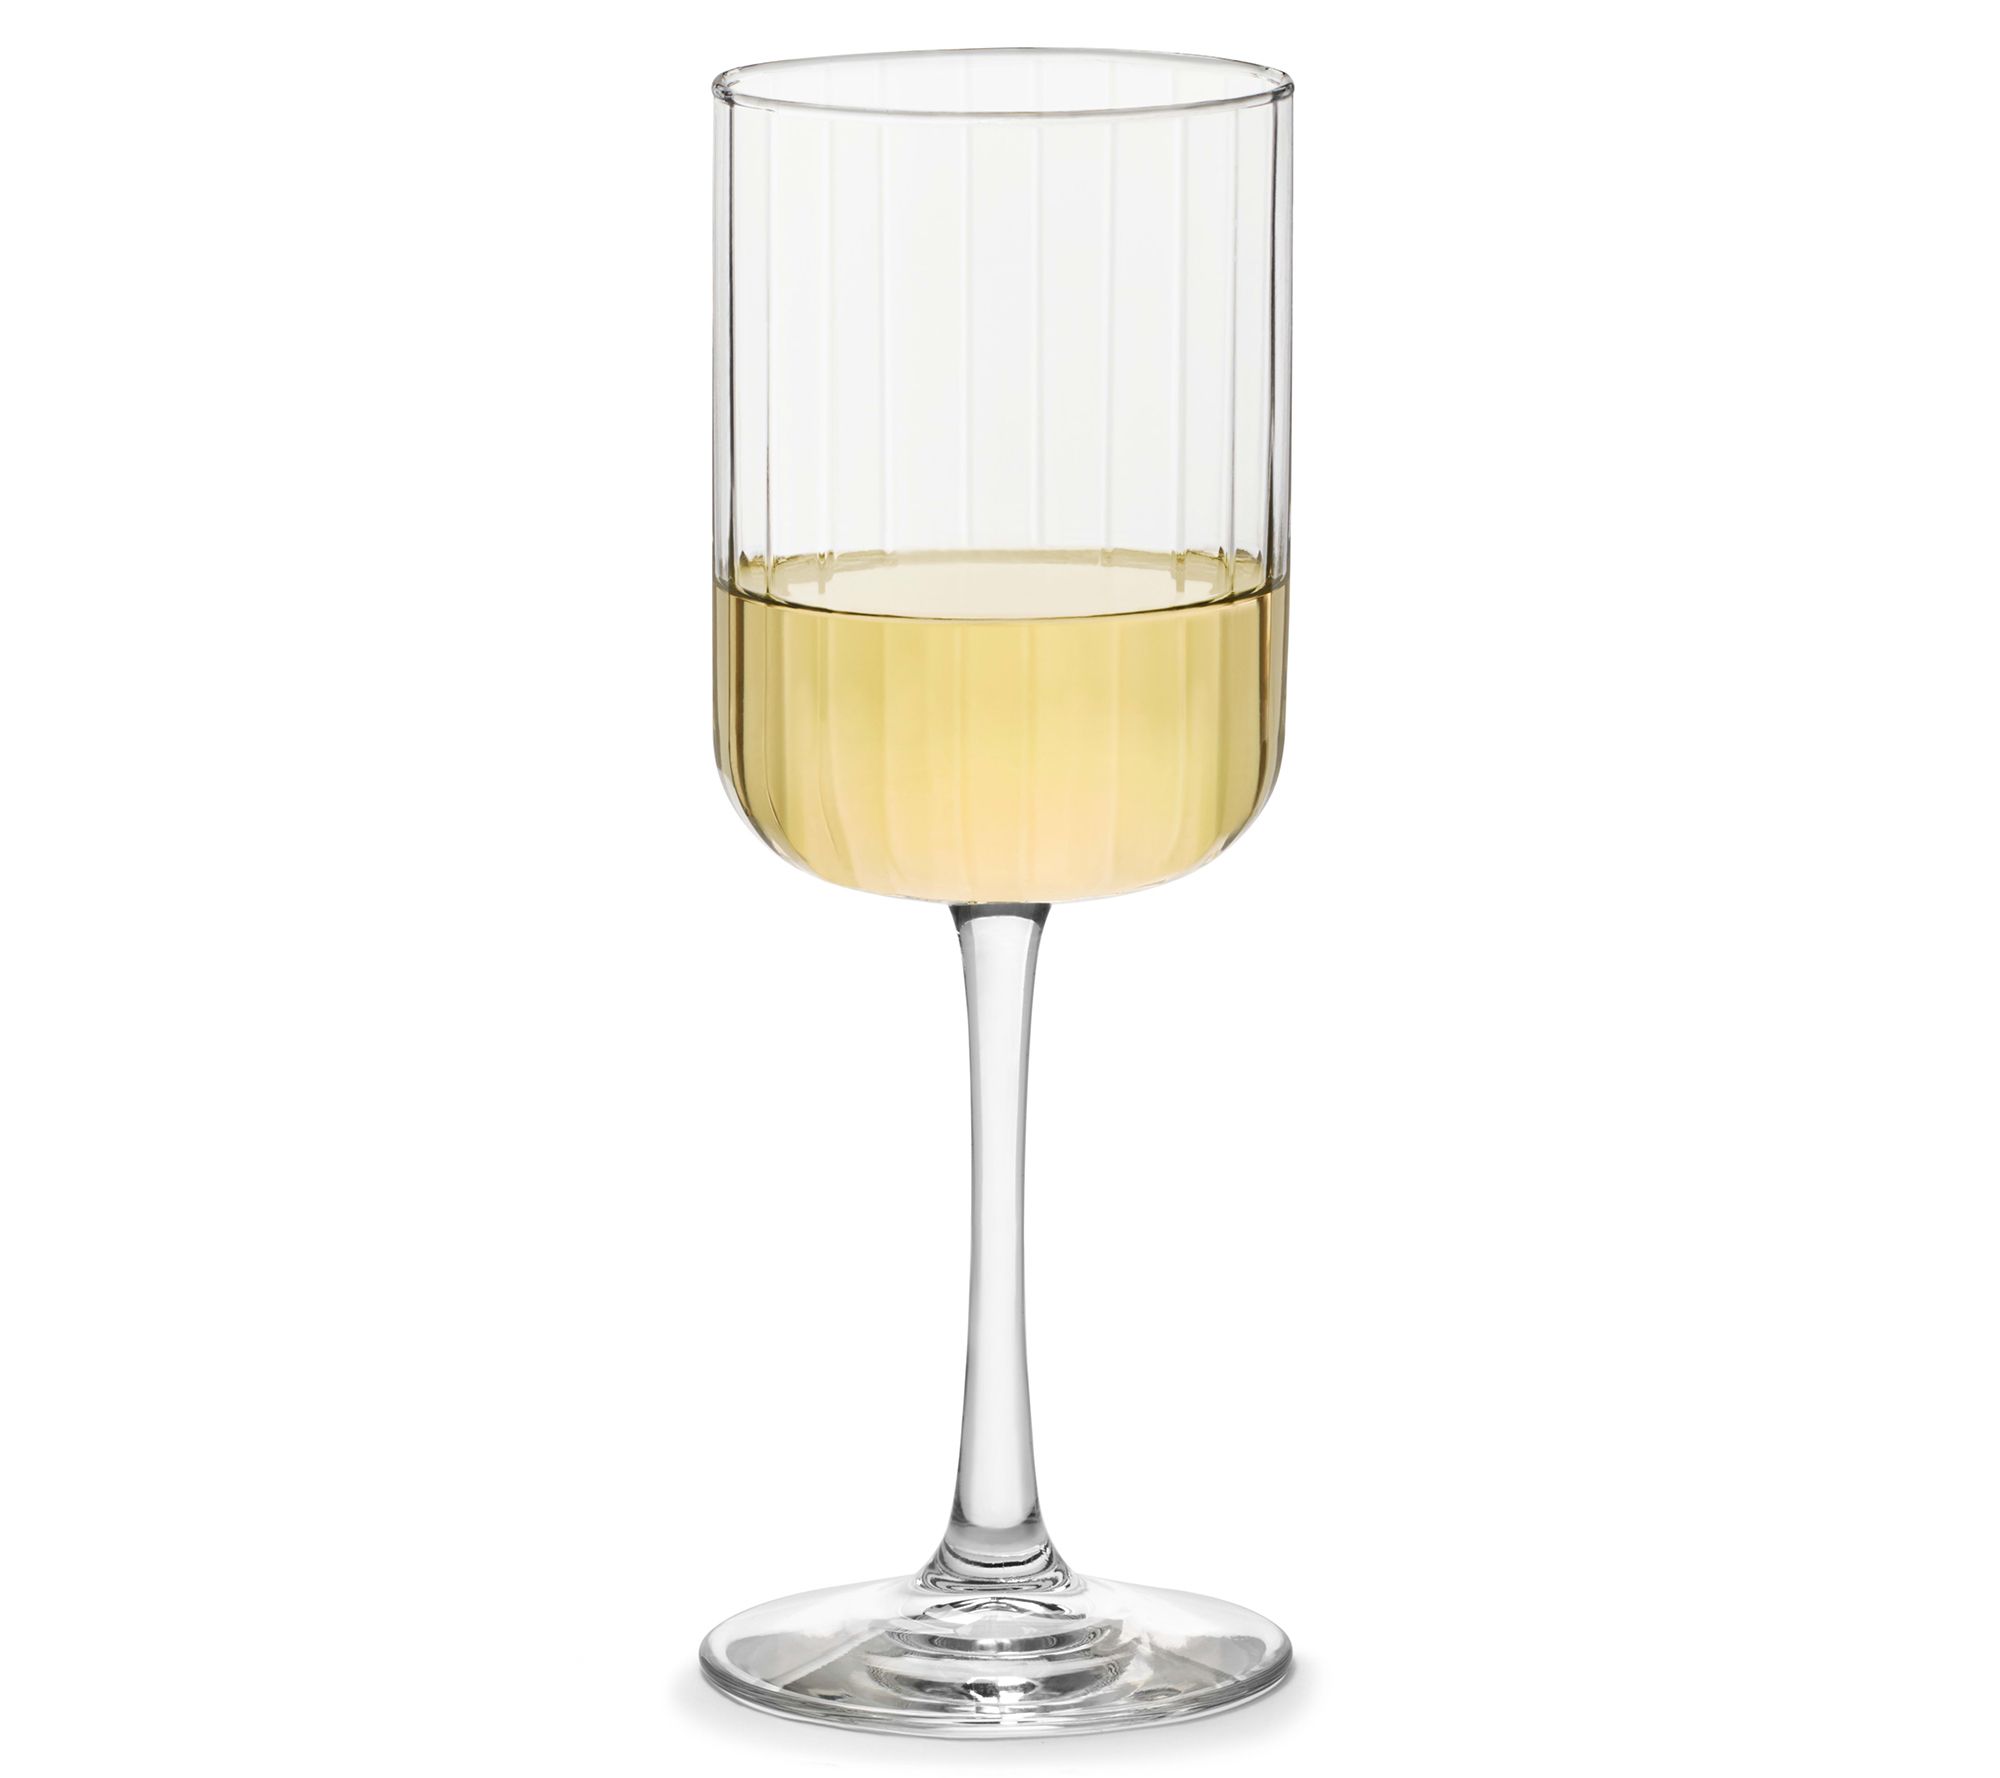 JoyJolt Layla Crystal White Wine Glasses - 13.5 oz - Set of 4